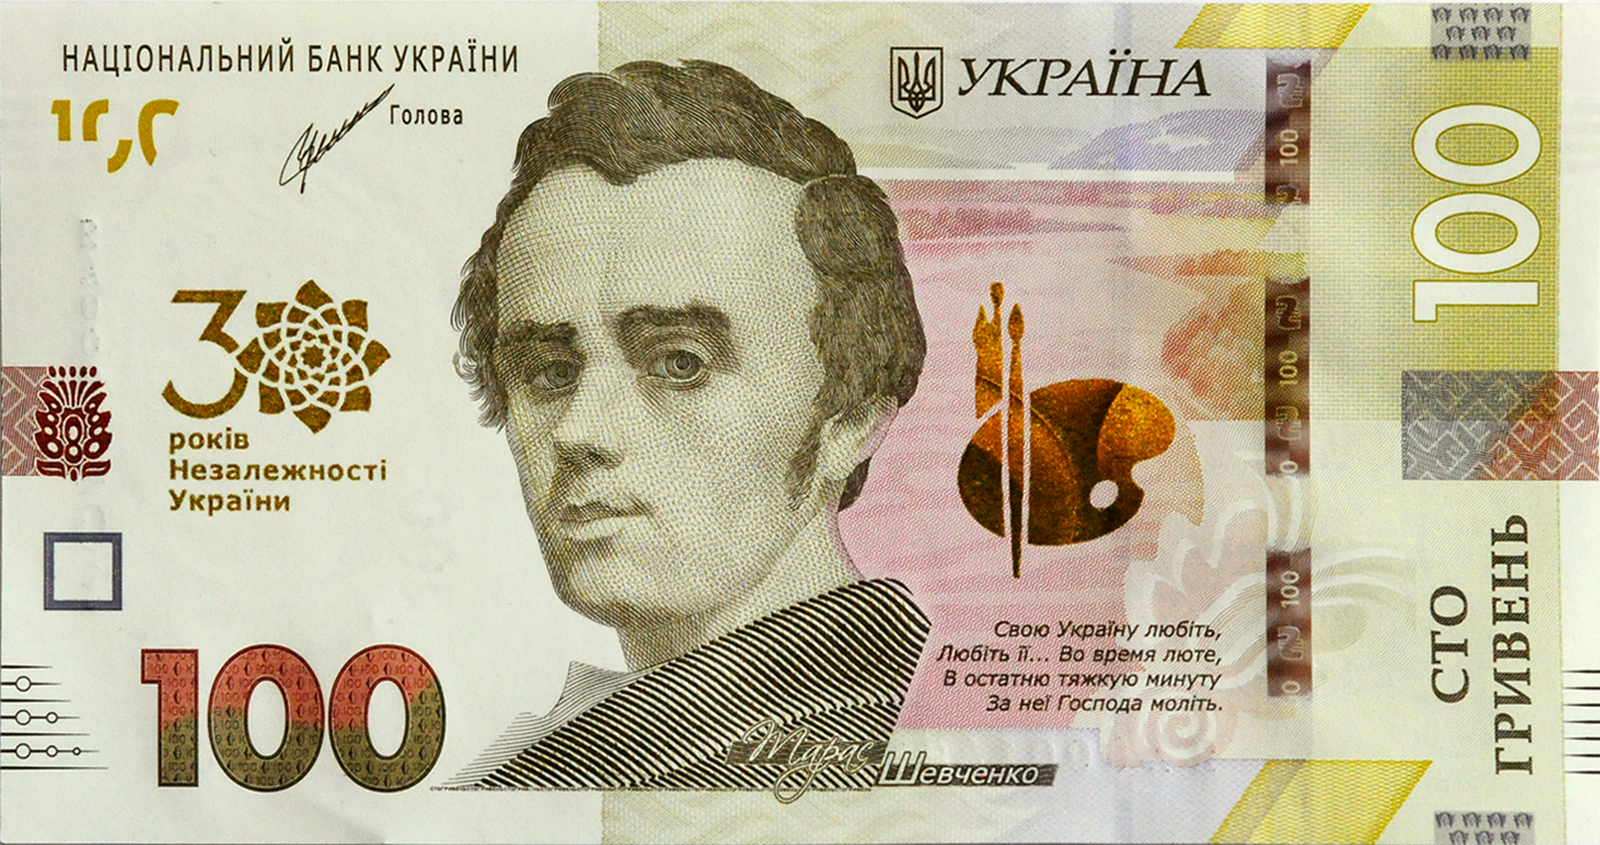 Нацбанк змінює дизайн гривень: дивіться, як виглядатимуть нові банкноти